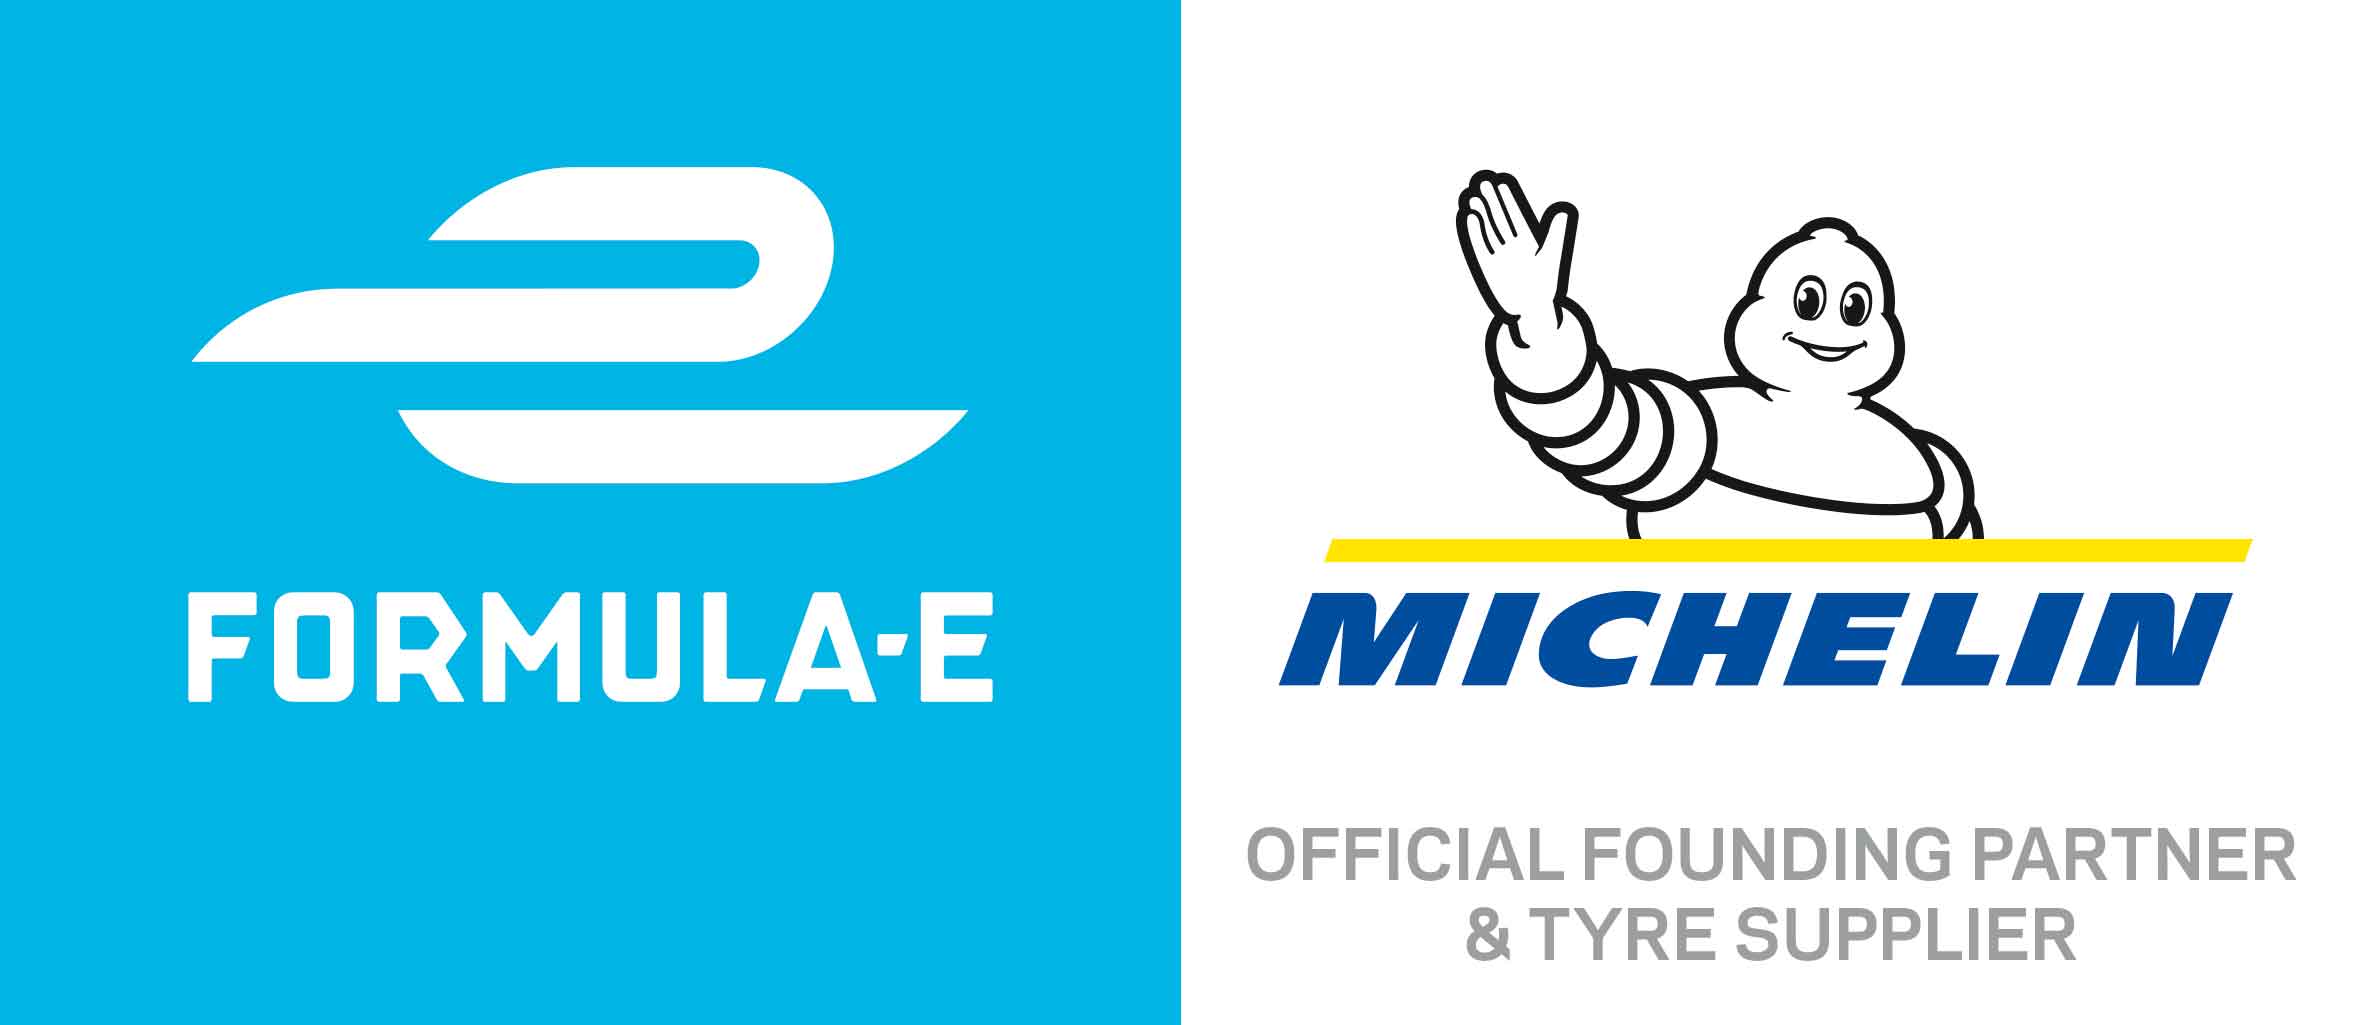 Michelin will remain supplier of Formula E until 2022